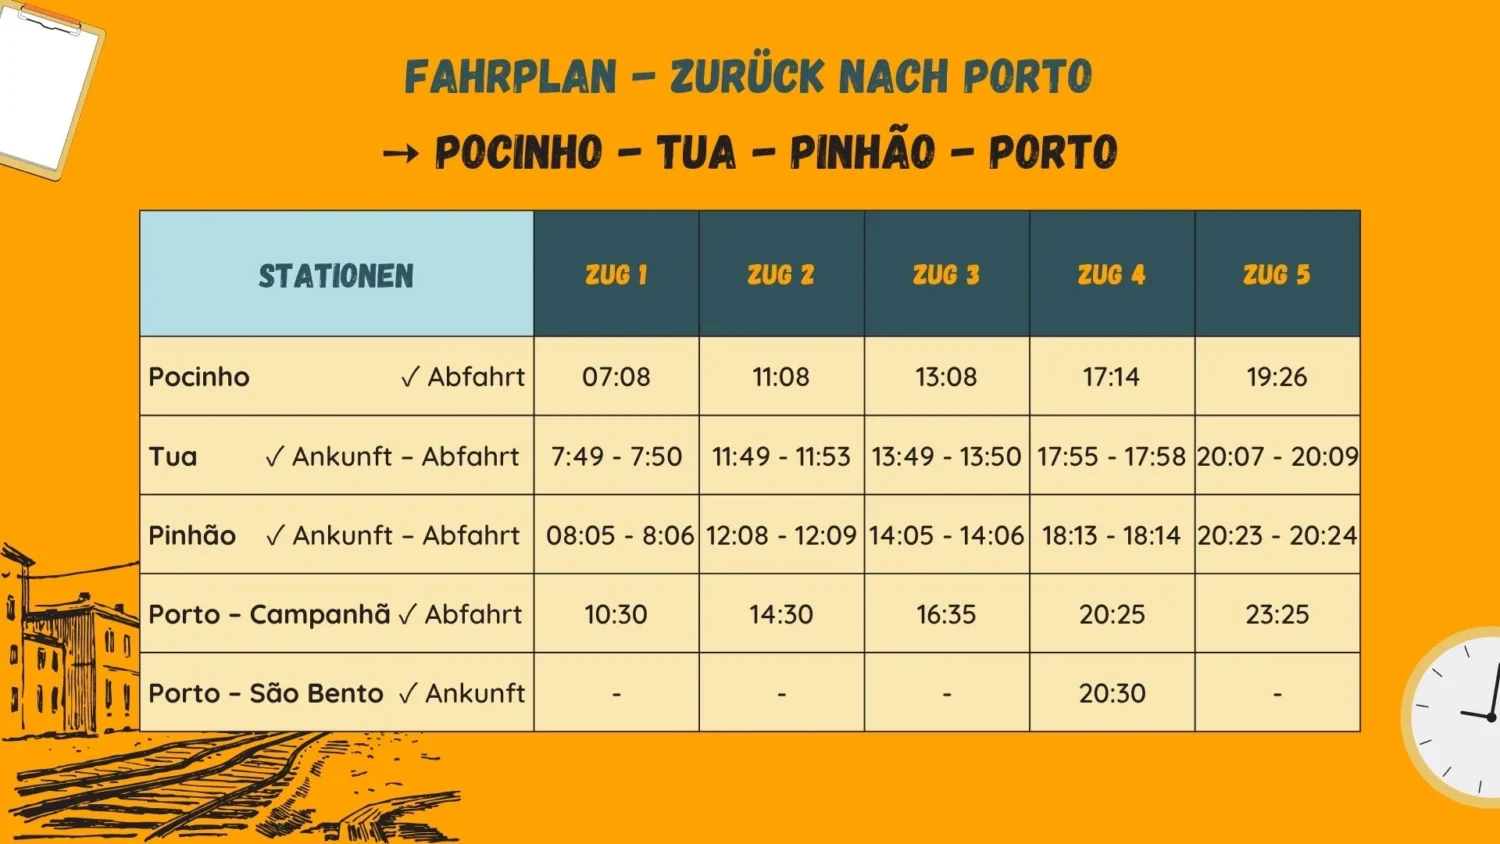 Fahrplan der fünf Züge von Pocinho über Tua, Pinhao und Porto Campanha zum Bahnhof Sao Bento. 